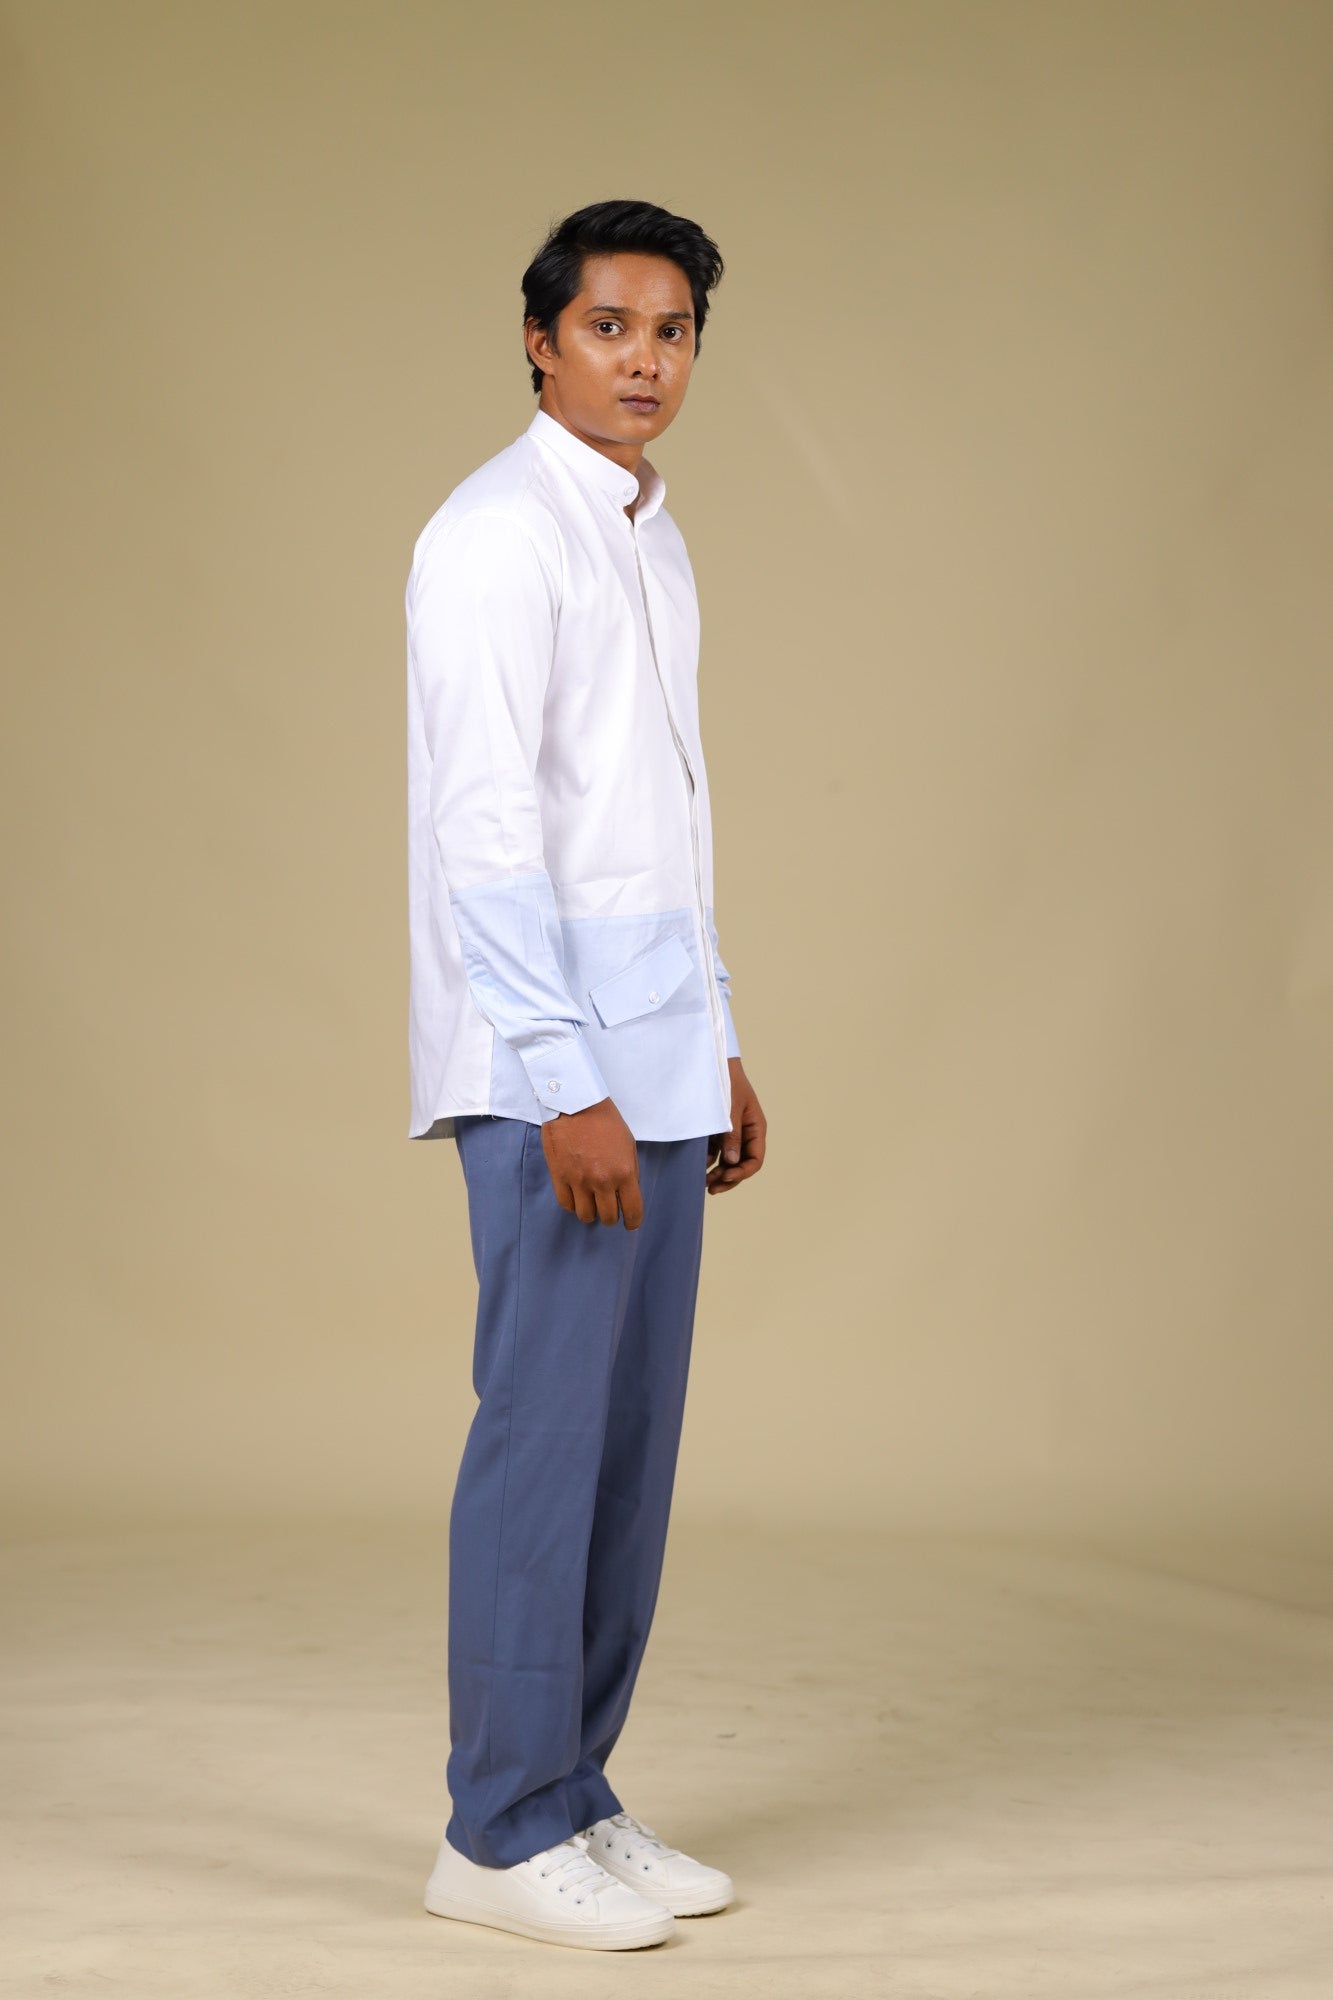 Men's White & Light Blue Color Light Sinum Shirt Full Sleeves Casual Shirt - Hilo Design